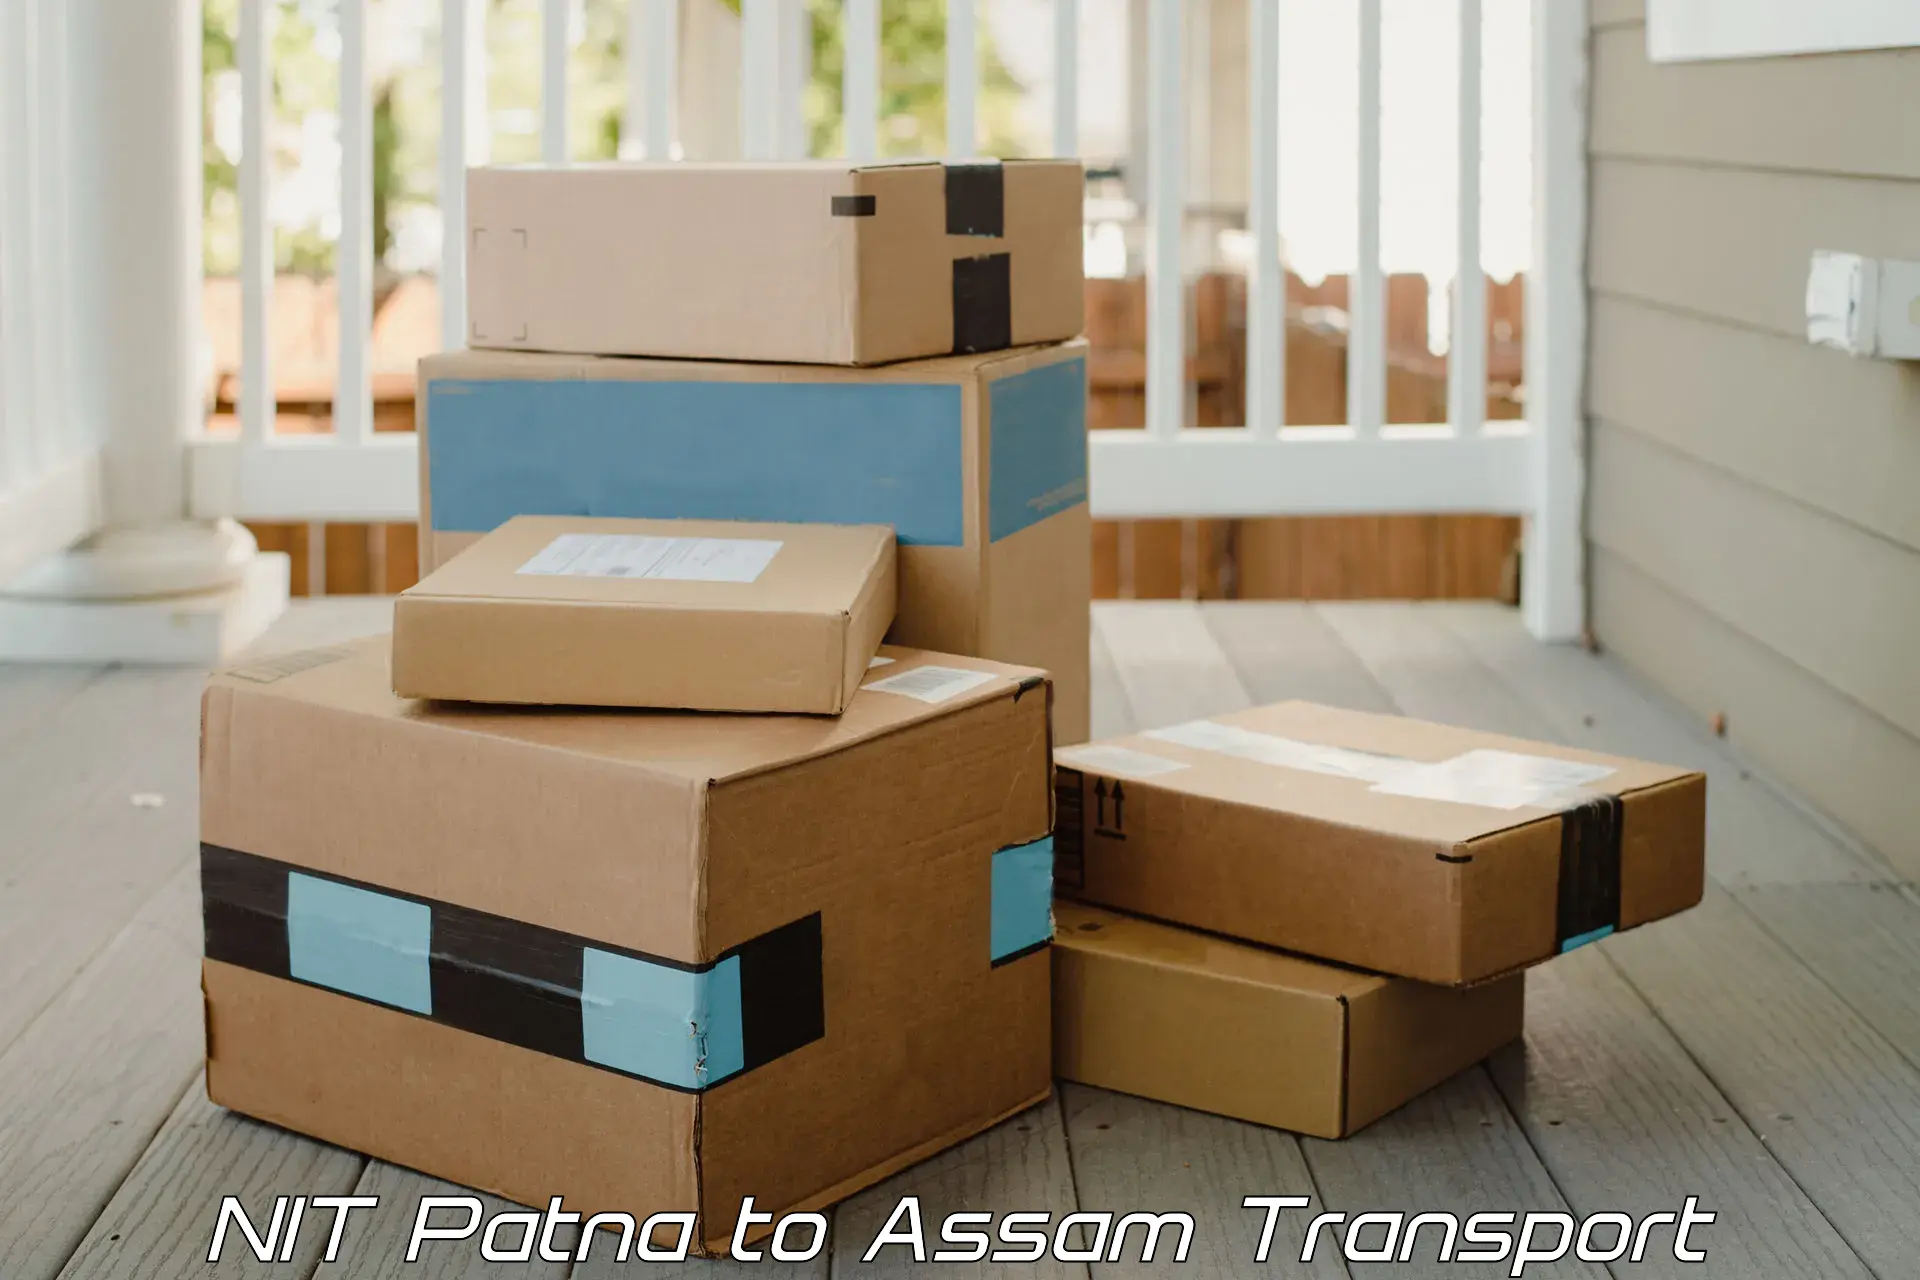 Luggage transport services NIT Patna to Dalgaon